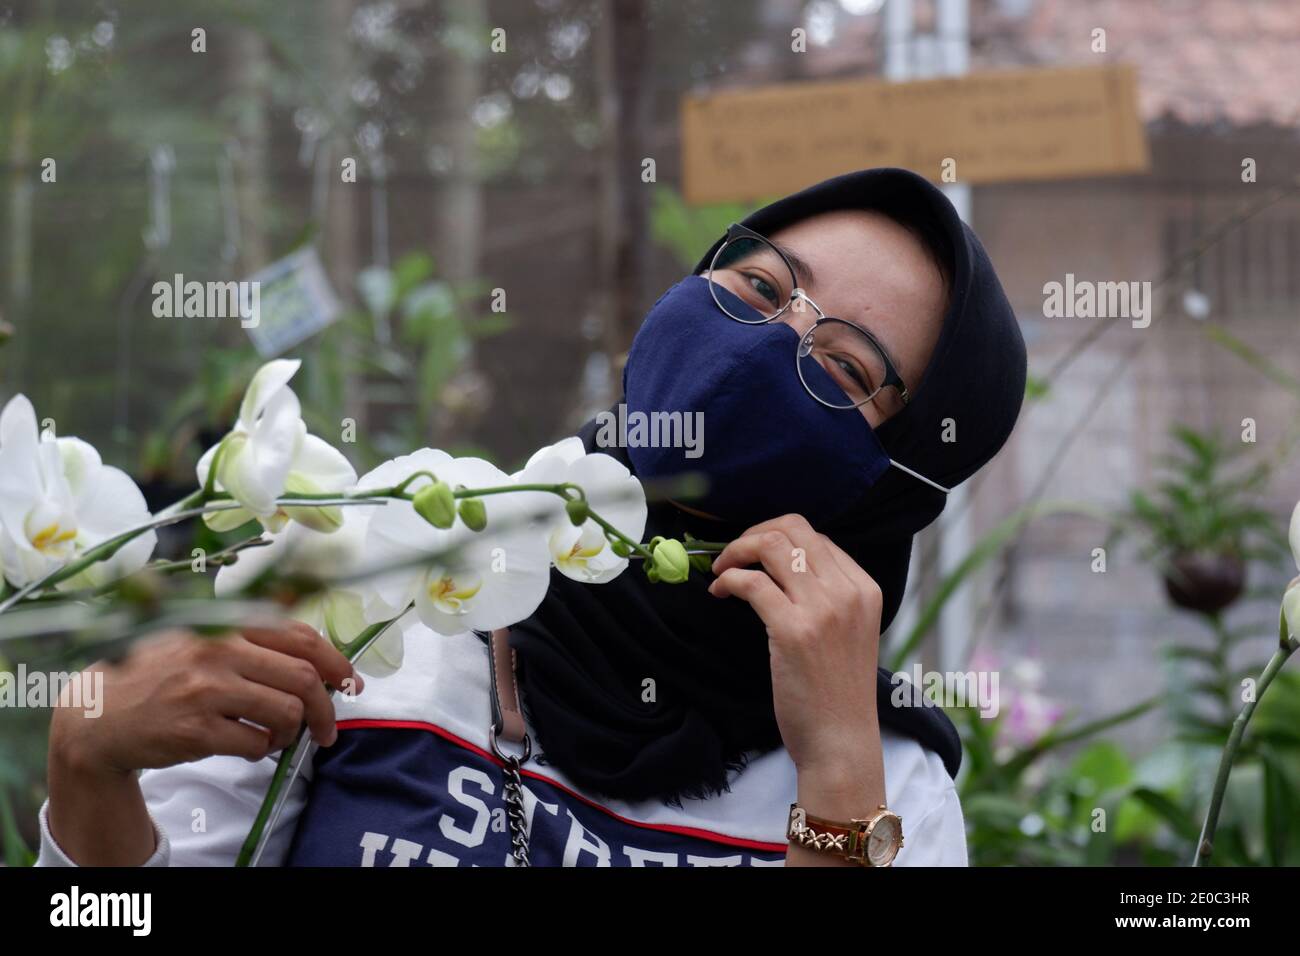 Belle donne turisti che indossano hijab visitando giardini di fiori durante la pandemia indossare maschere per rispettare la salute e la sicurezza Protocolli da COVID Foto Stock